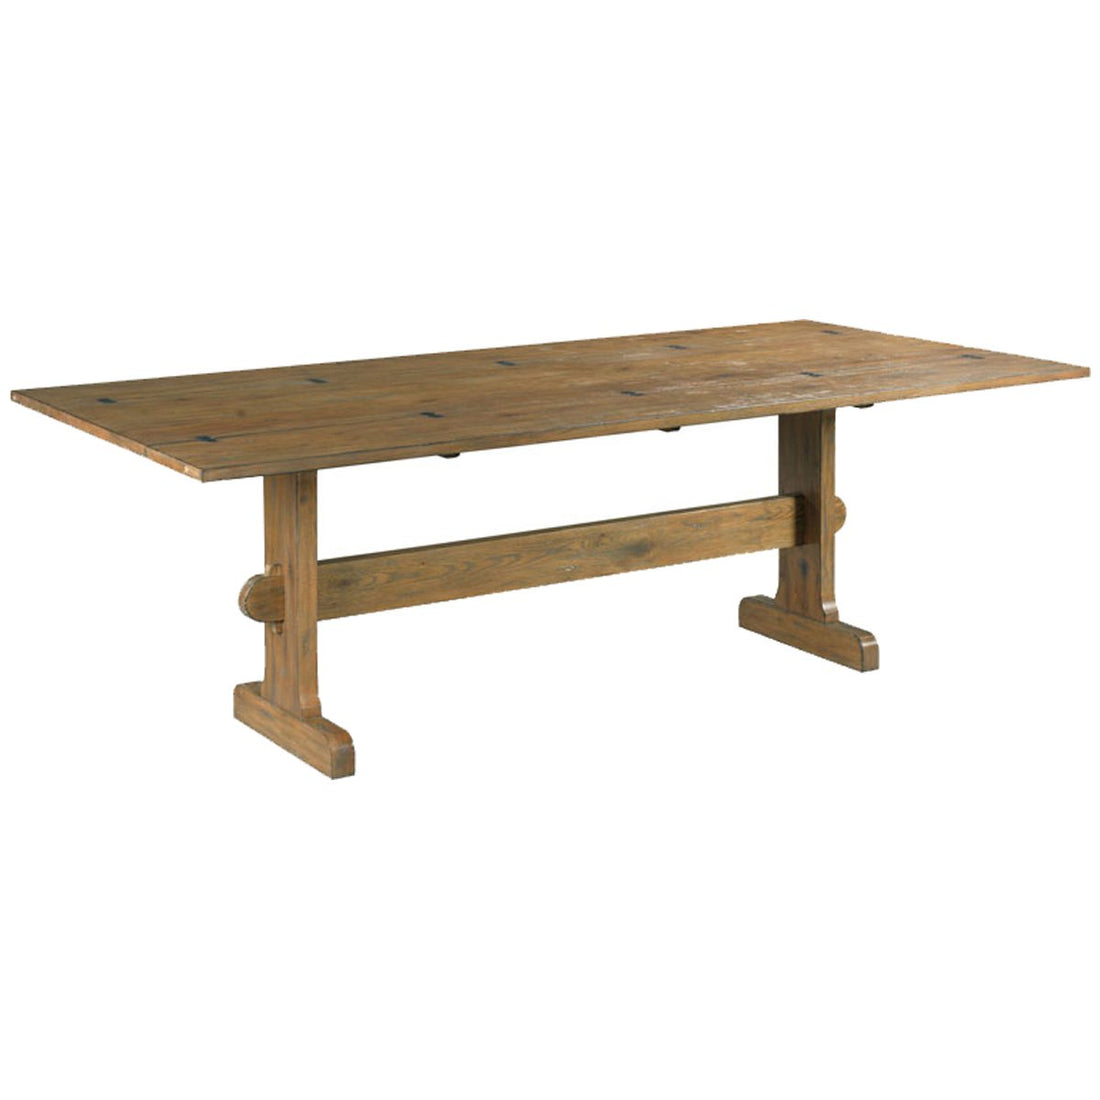 Woodbridge Furniture Metamorphosis Table